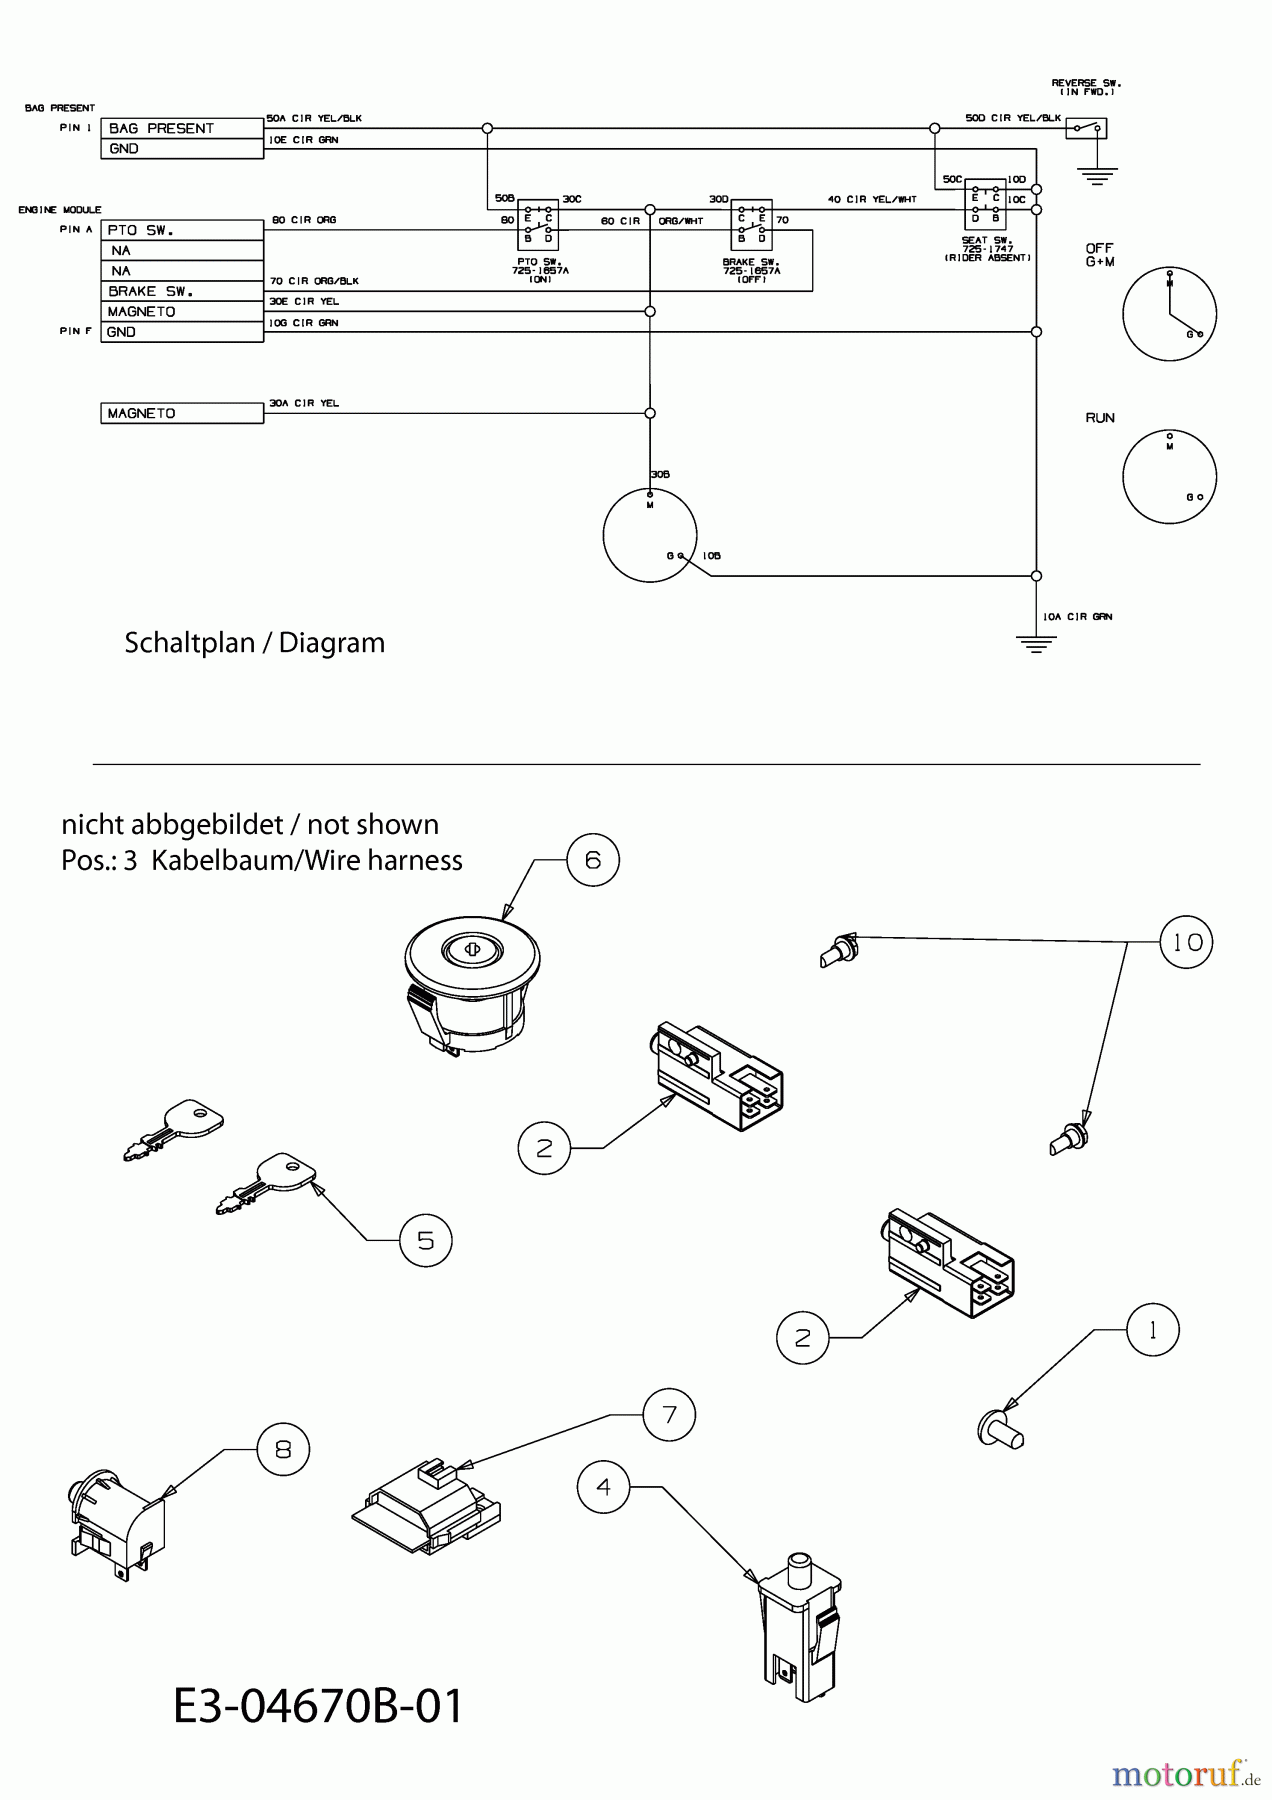 04 60 Wiring Diagram - Wiring Diagram Schemas